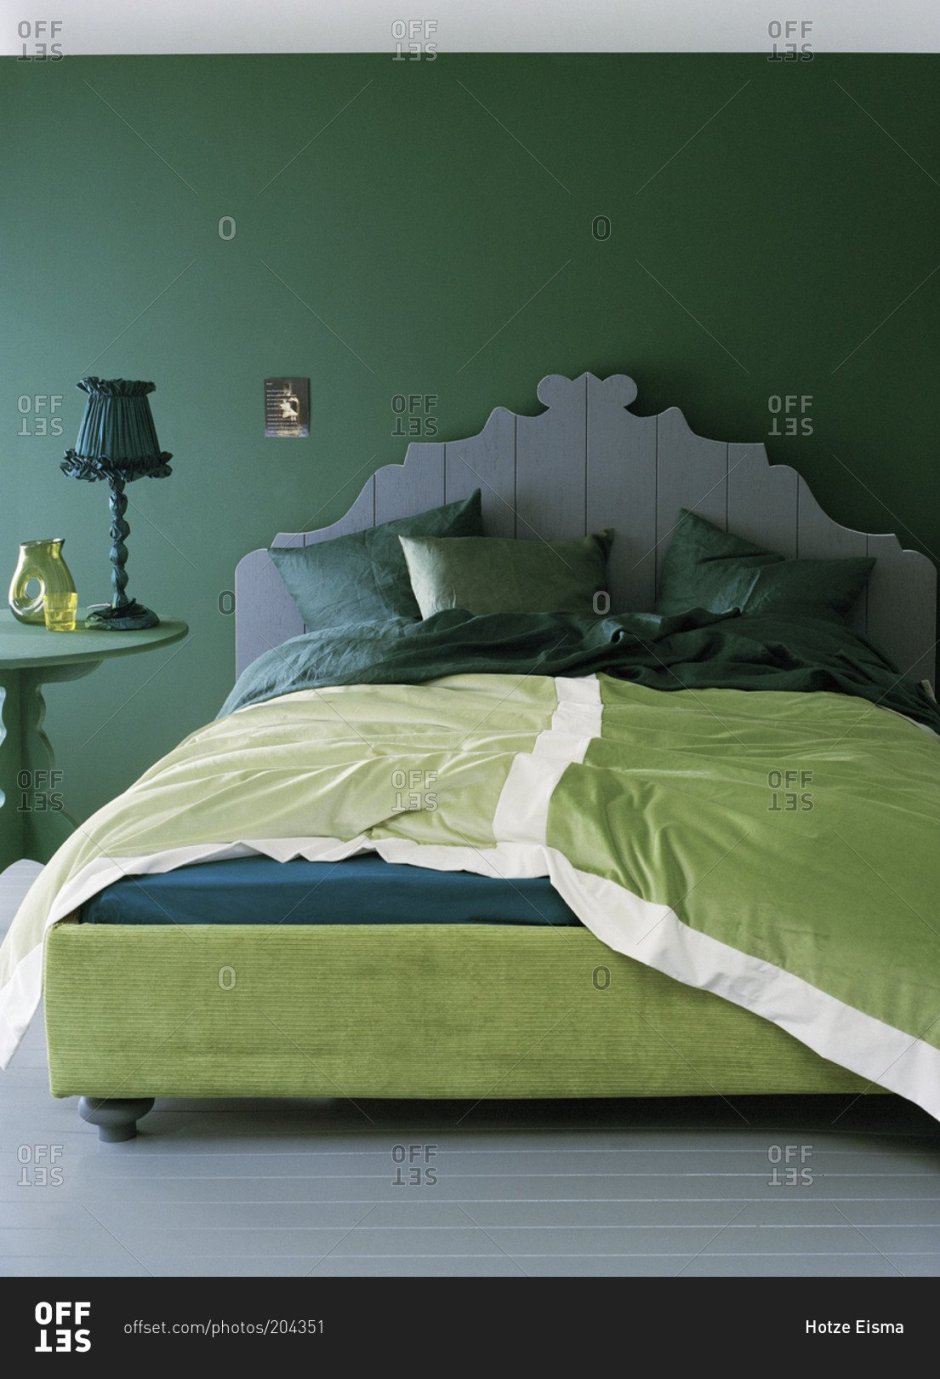 Зеленая кровать в интерьере